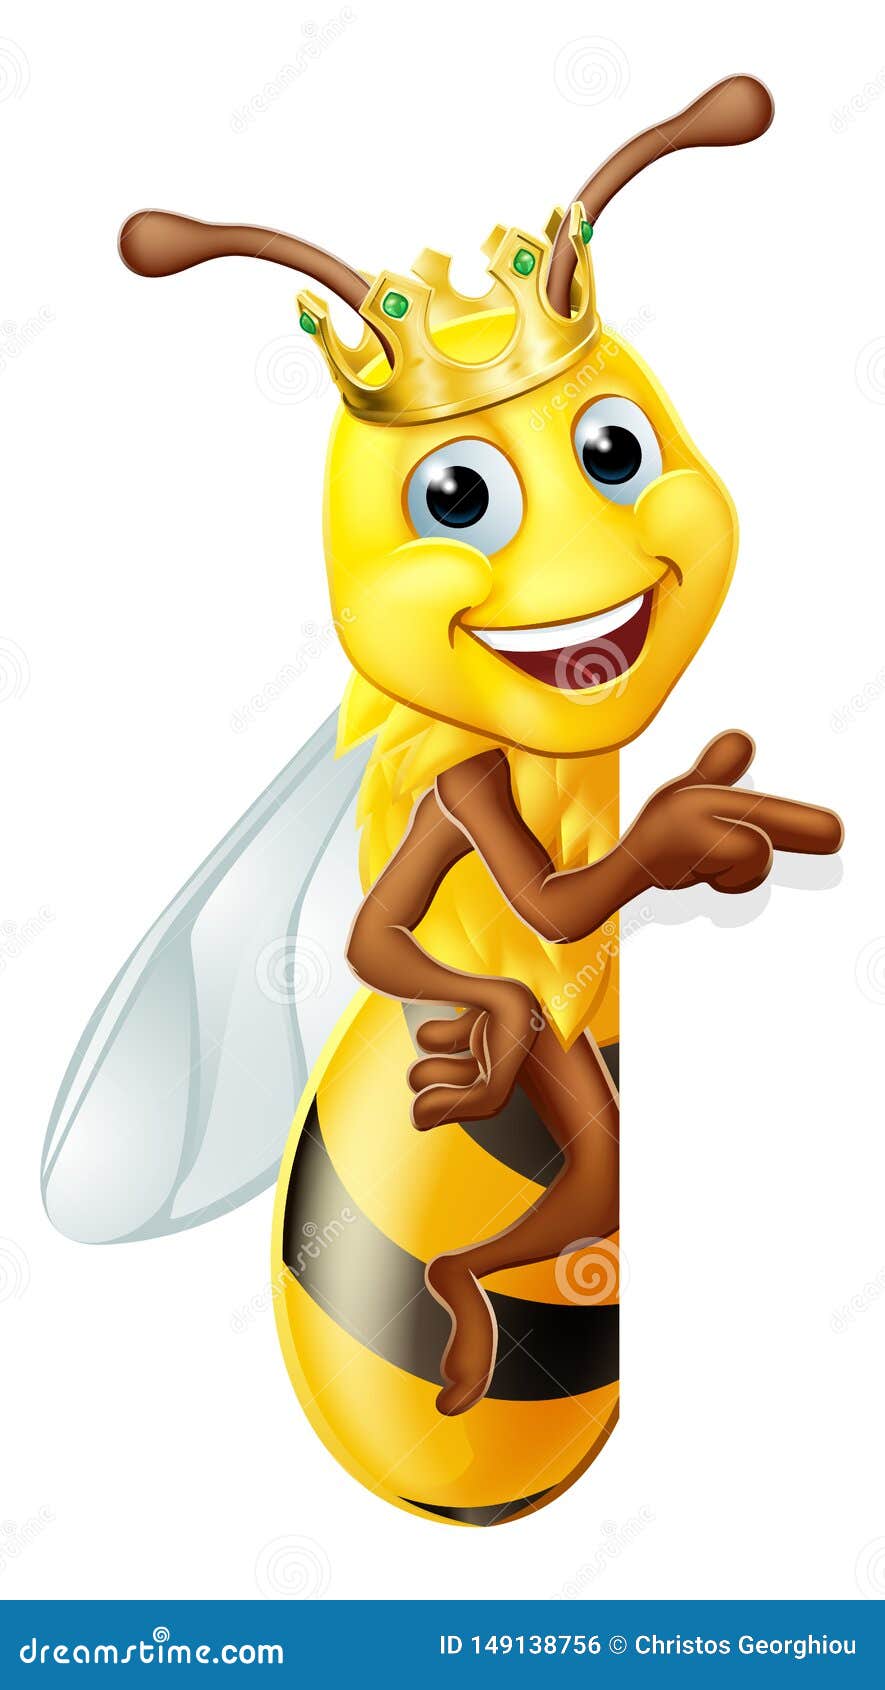 Download Queen Honey Bumble Bee Bumblebee In Crown Cartoon Stock ...